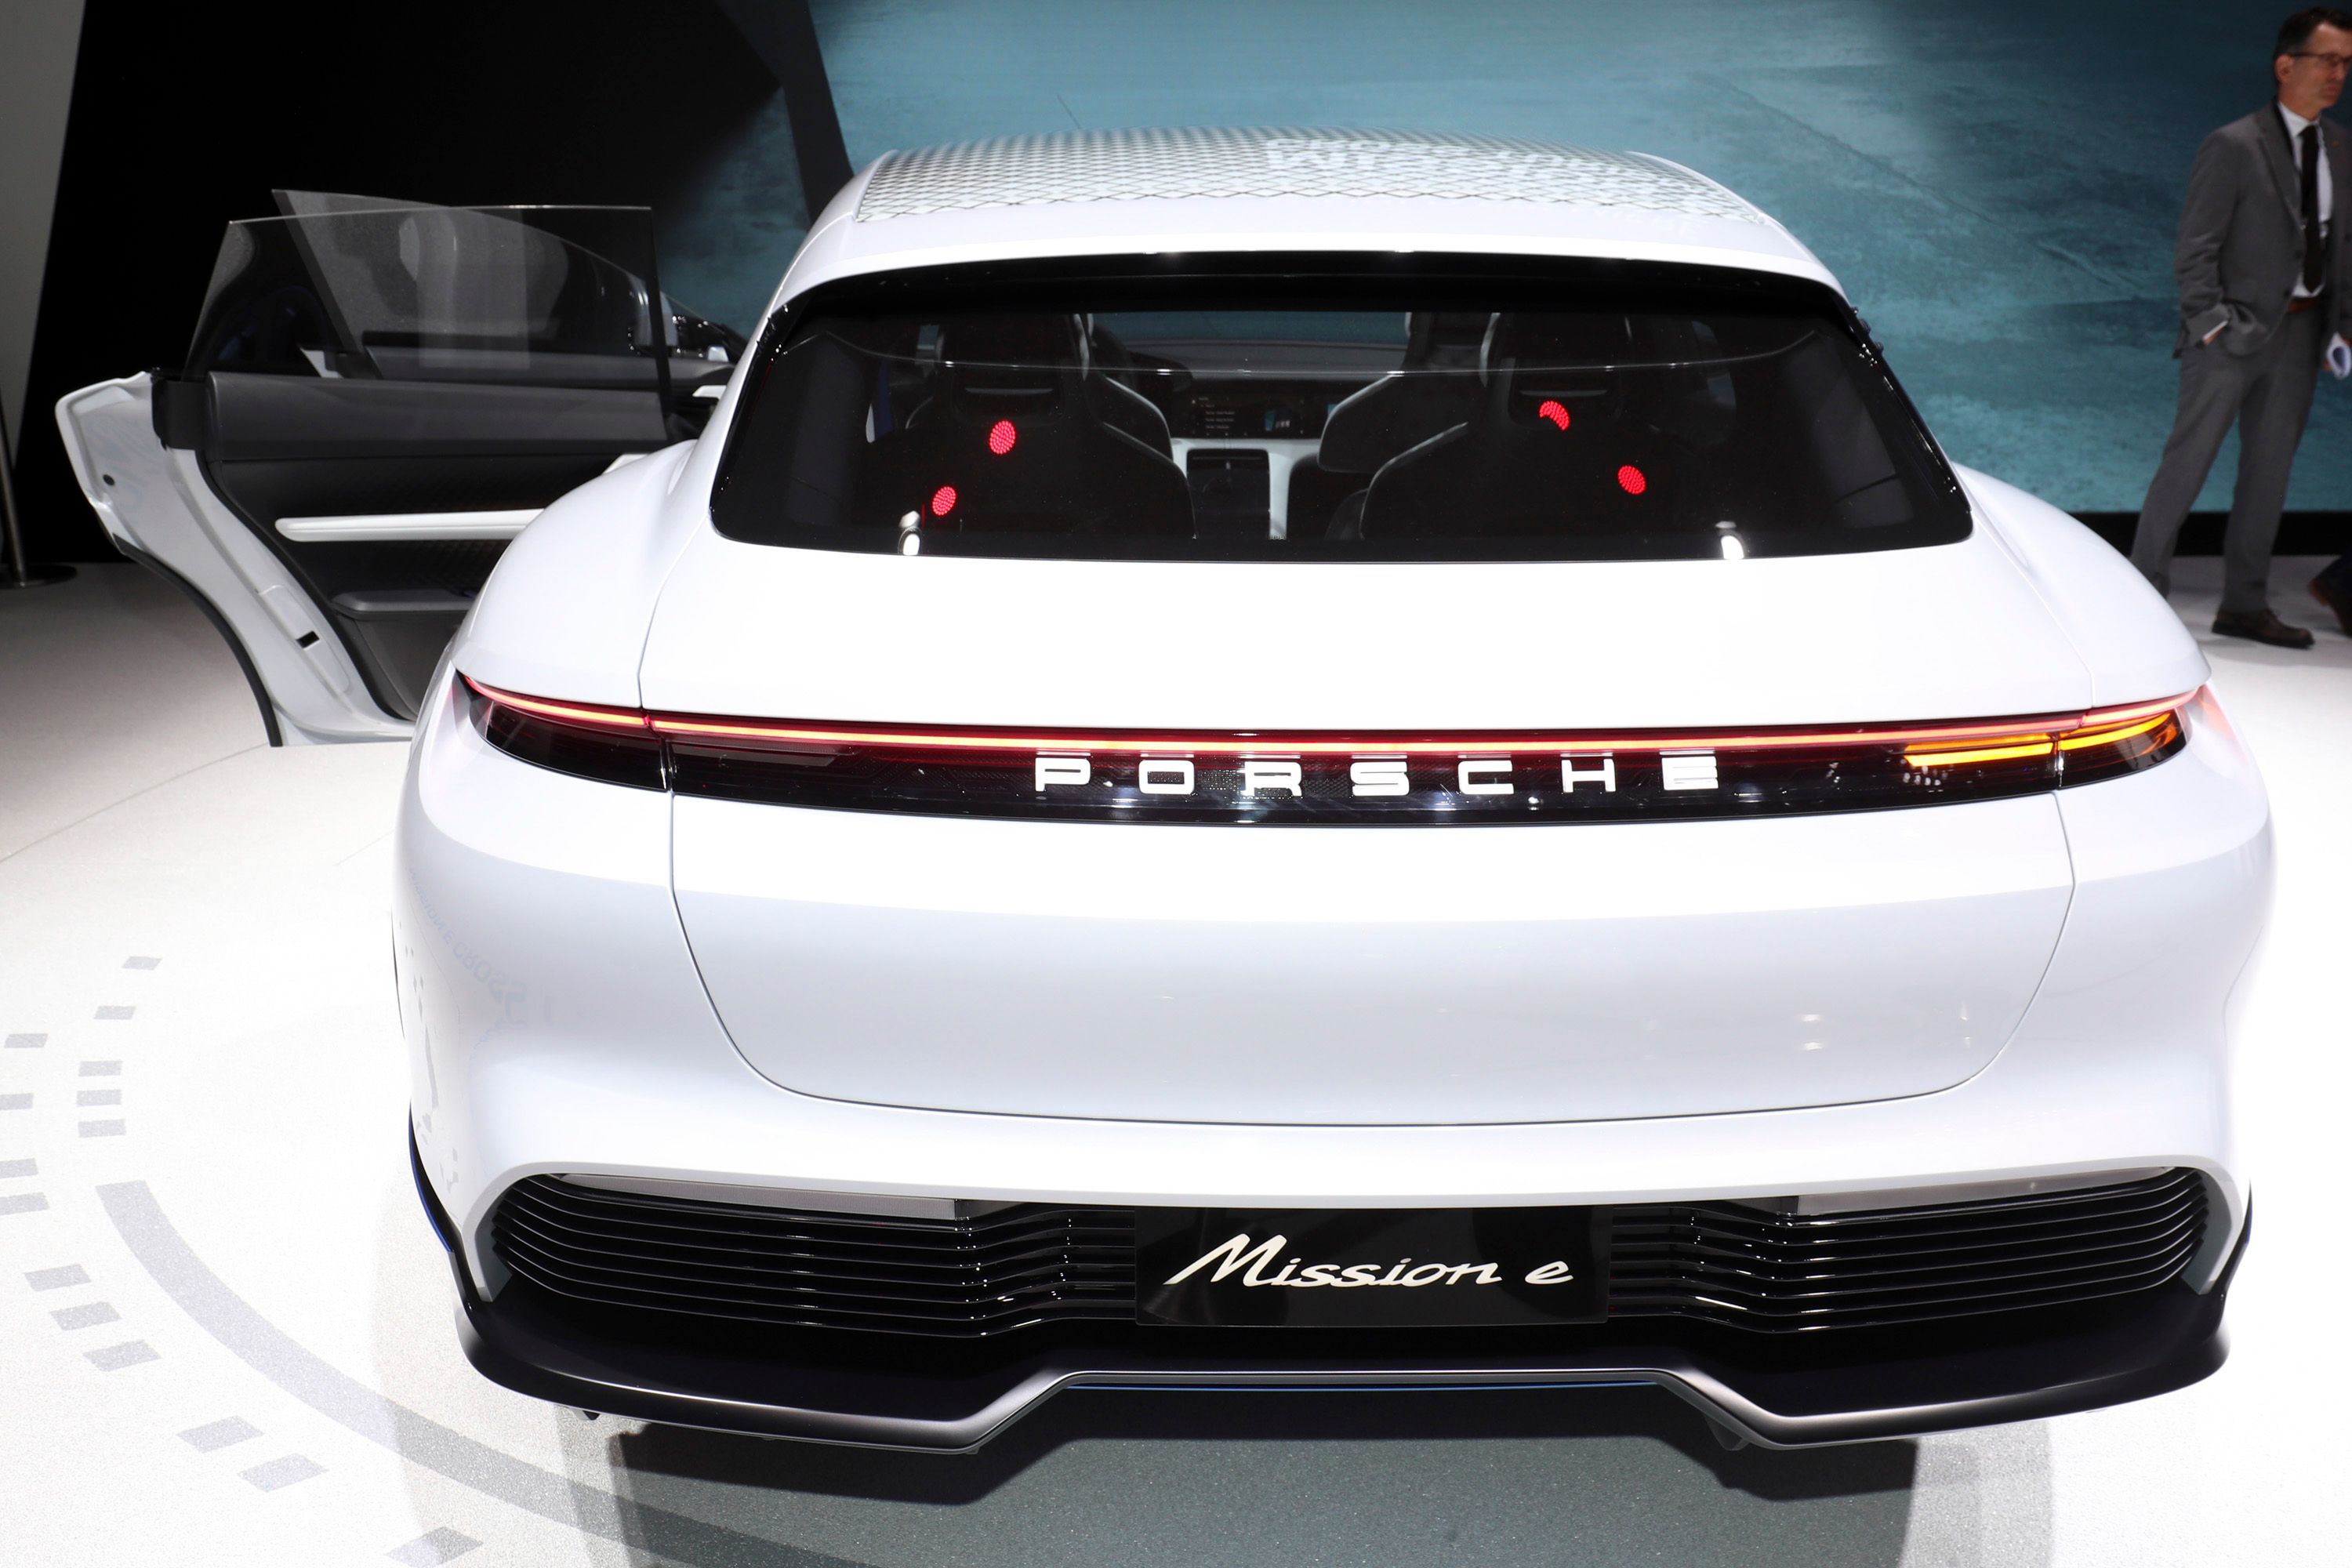 2018 Porsche Mission E Cross Turismo Concept